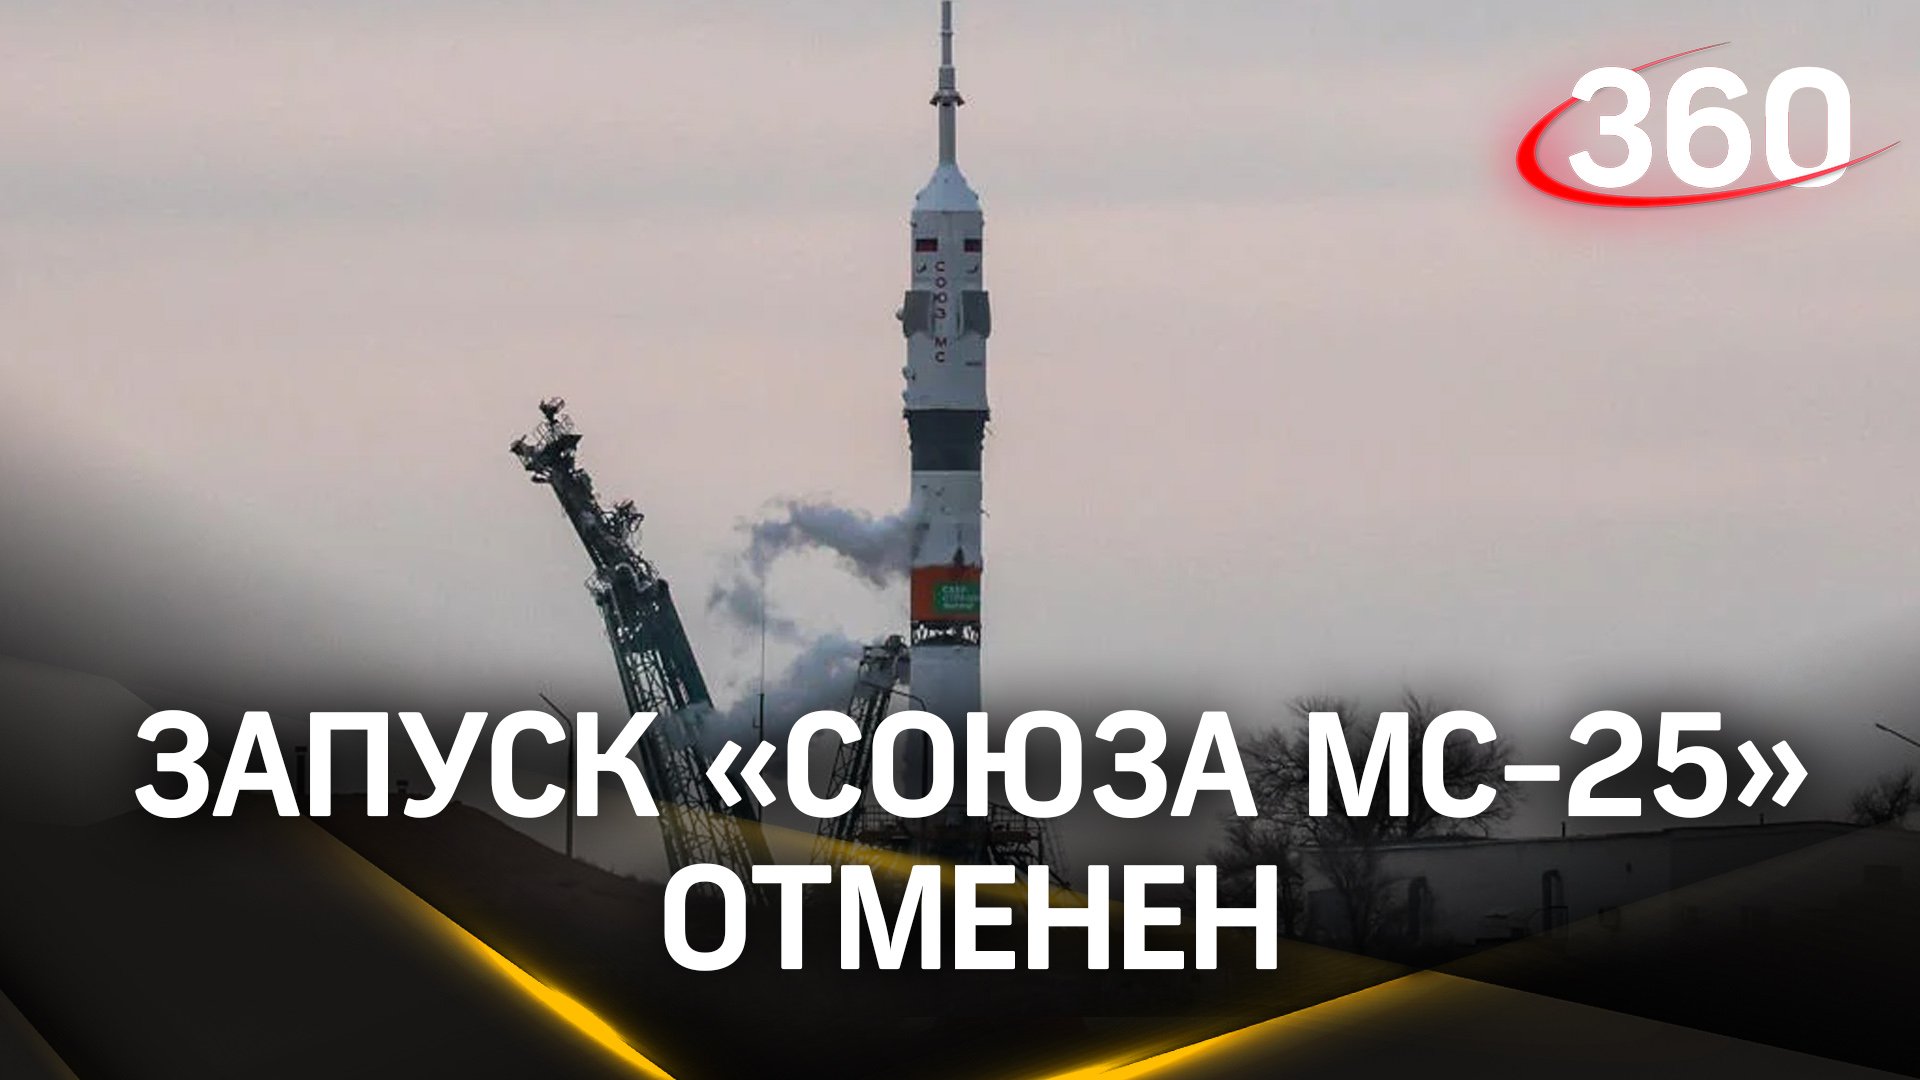 Просадка напряжения химического источника тока – глава Роскосмоса об отмене запуска «Союза МС-25»